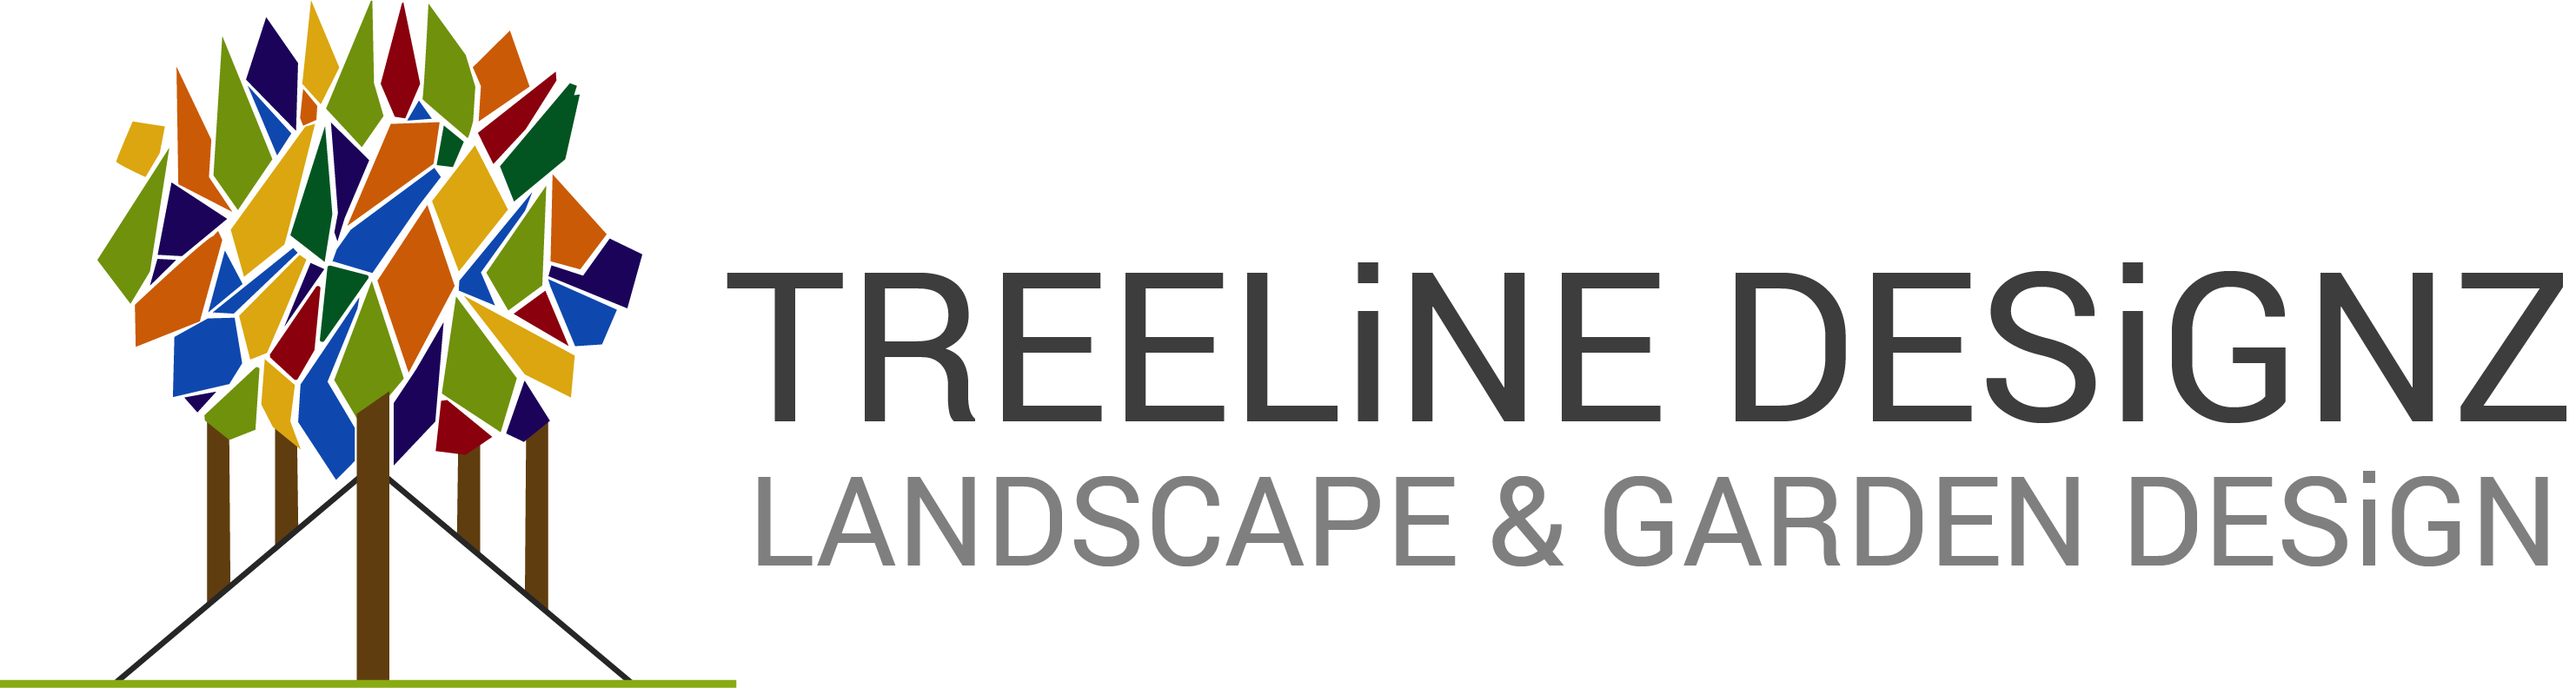 Treeline Designzs